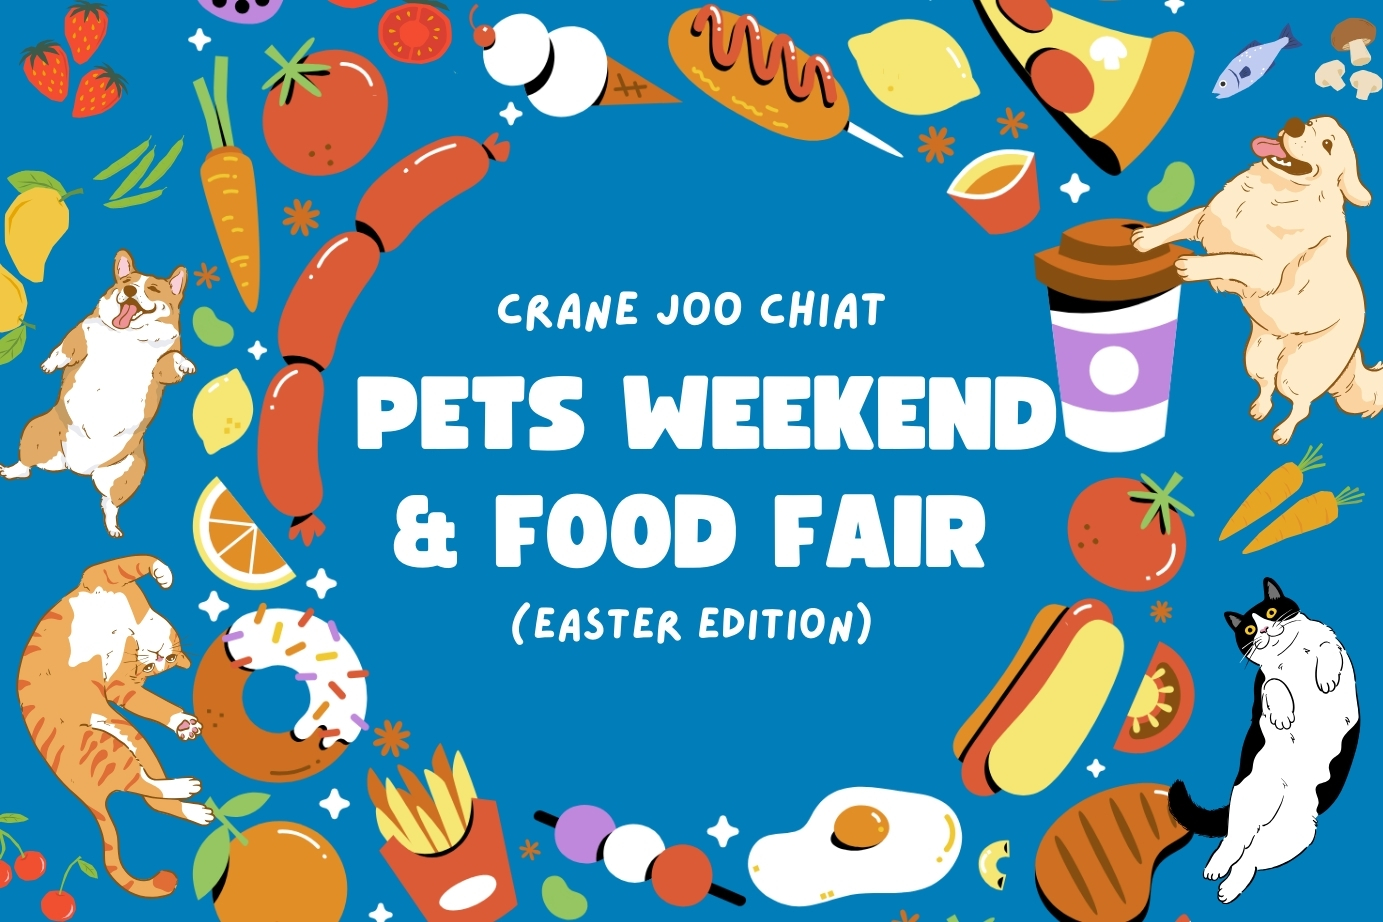 Pets Weekend & Food Fair